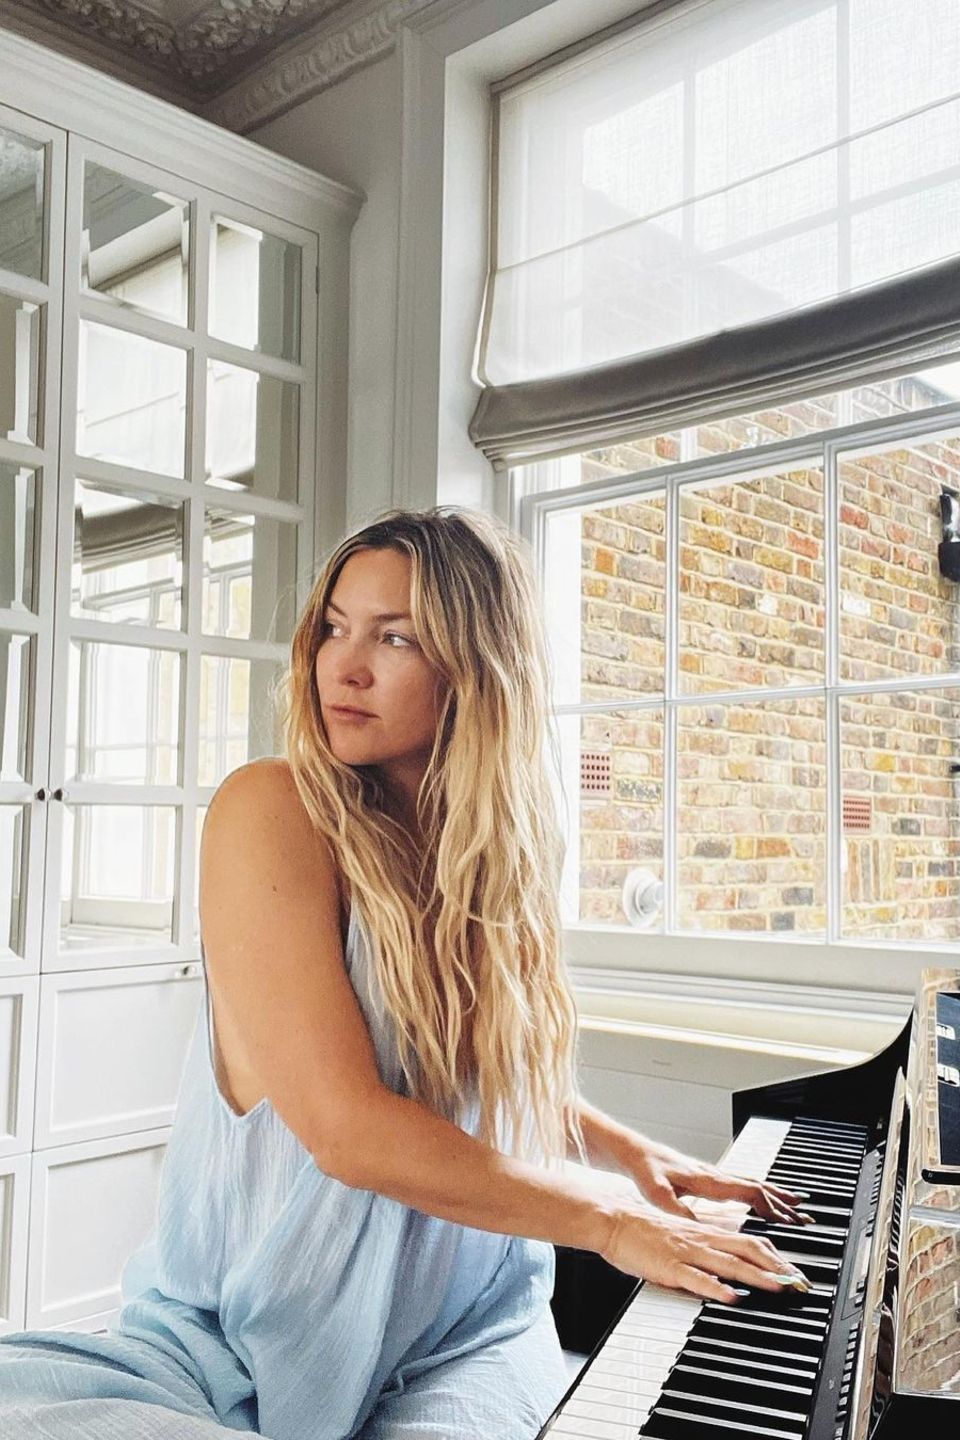 Kate Hudson begeistert ihre 15.6 Millionen Instagram Follower:innen mit einem natürlich schönen Bild, das sie an einem Klavier sitzend zeigt. Ungeschminkt genießt sie den ganz besonderen Charme Londons. Die britische Metropole scheint einen beruhigenden Effekt auf die Dreifach-Mami zu haben. Sie sieht entspannt, relaxt und happy aus.